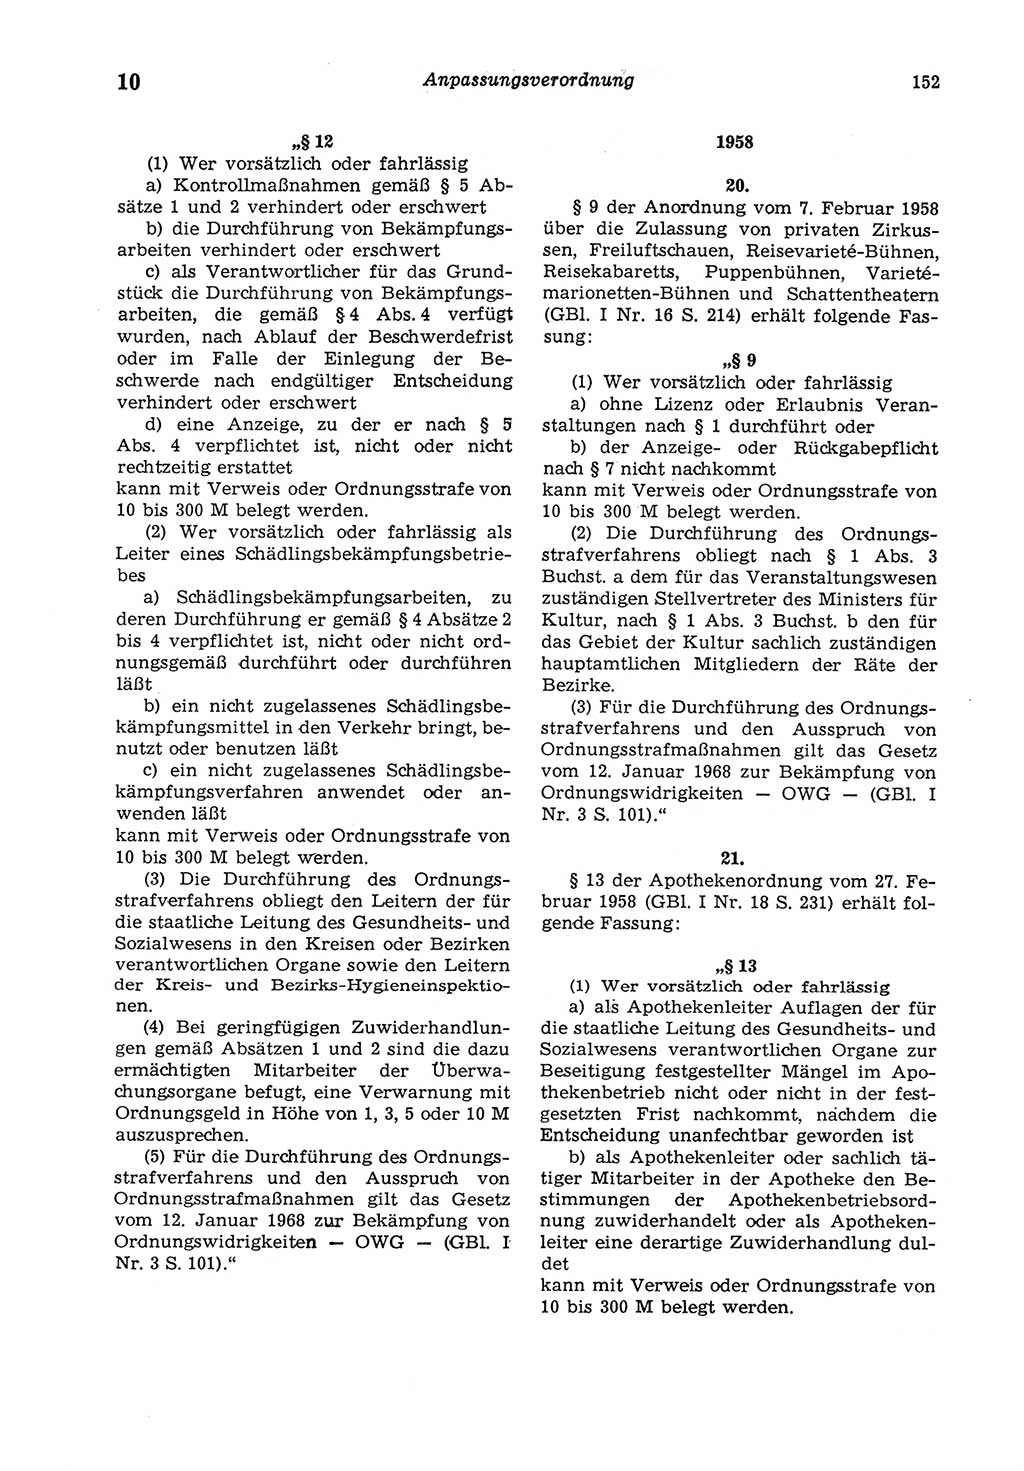 Strafgesetzbuch (StGB) der Deutschen Demokratischen Republik (DDR) und angrenzende Gesetze und Bestimmungen 1975, Seite 152 (StGB DDR Ges. Best. 1975, S. 152)